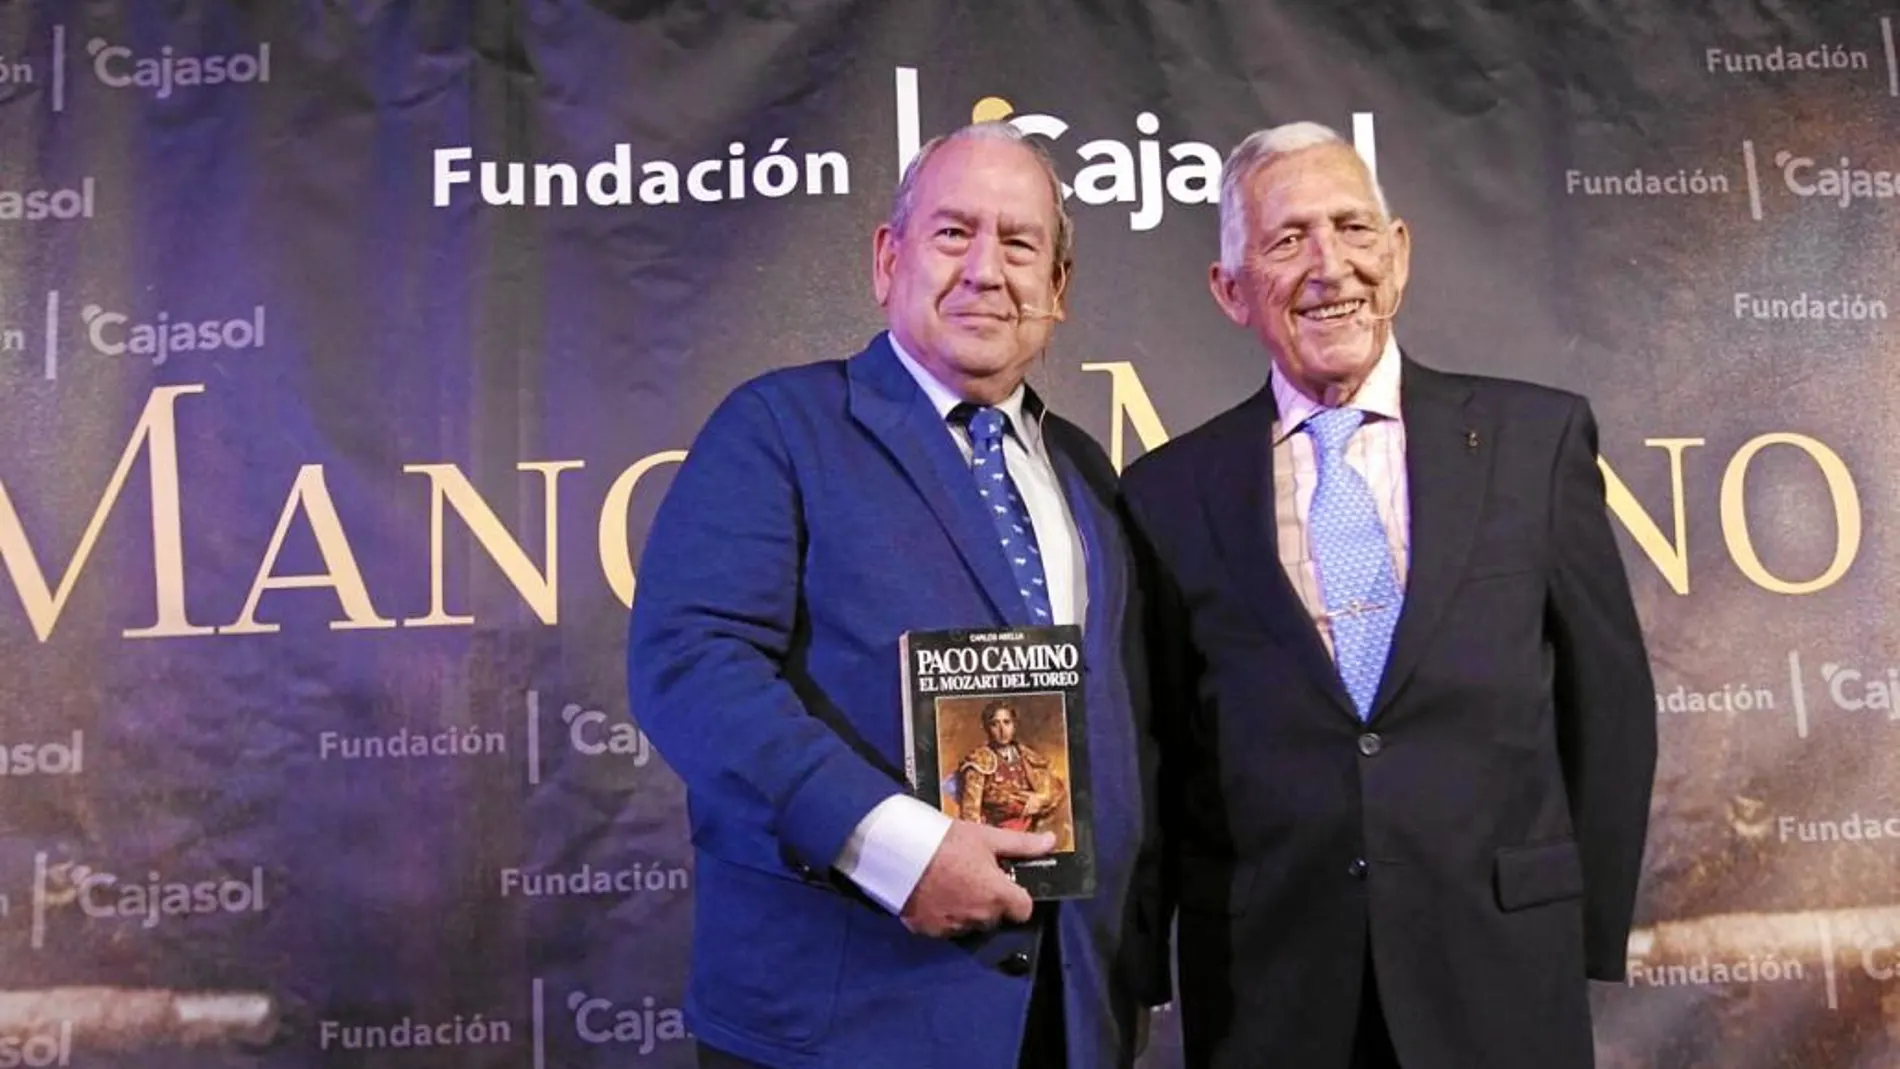 Paco Camino y Carlos Abella fueron los protagonistas del «Mano a mano» de Cajasol que moderó José Enrique Moreno